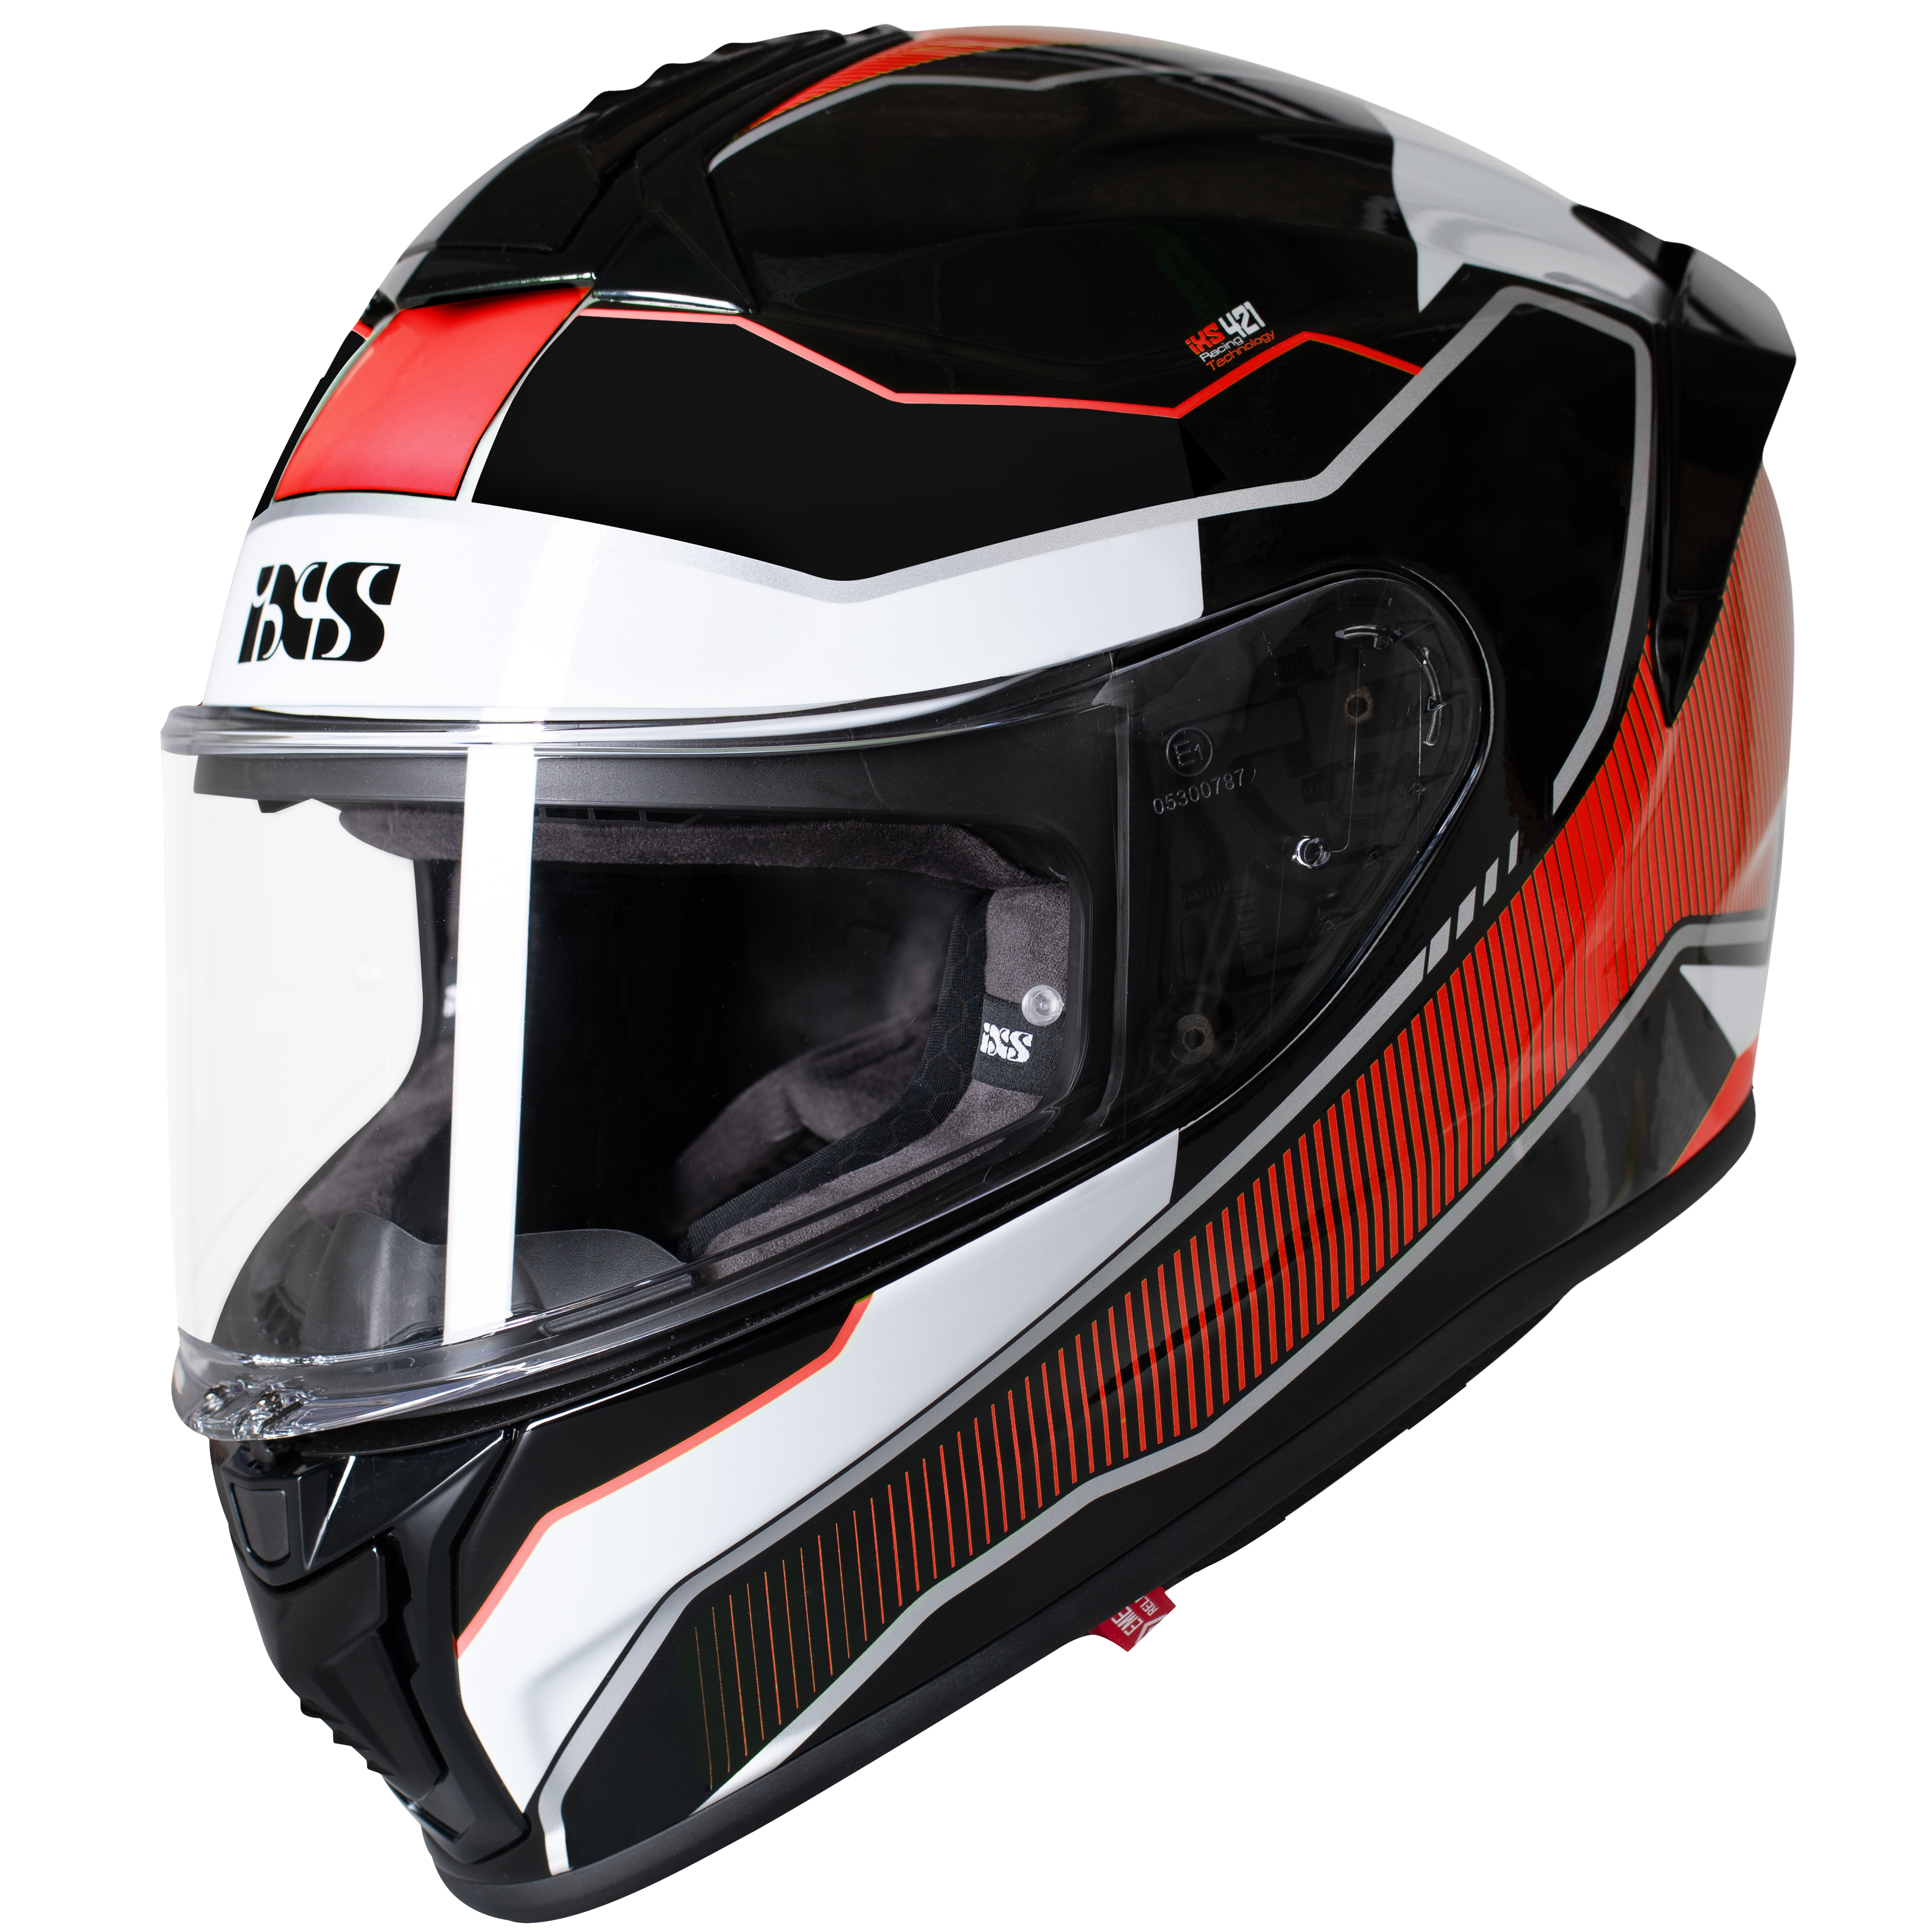 IXS HX 1000 Fork Matt Black Orange Motorcycle Helmet Motorbike Fullface Race J&S